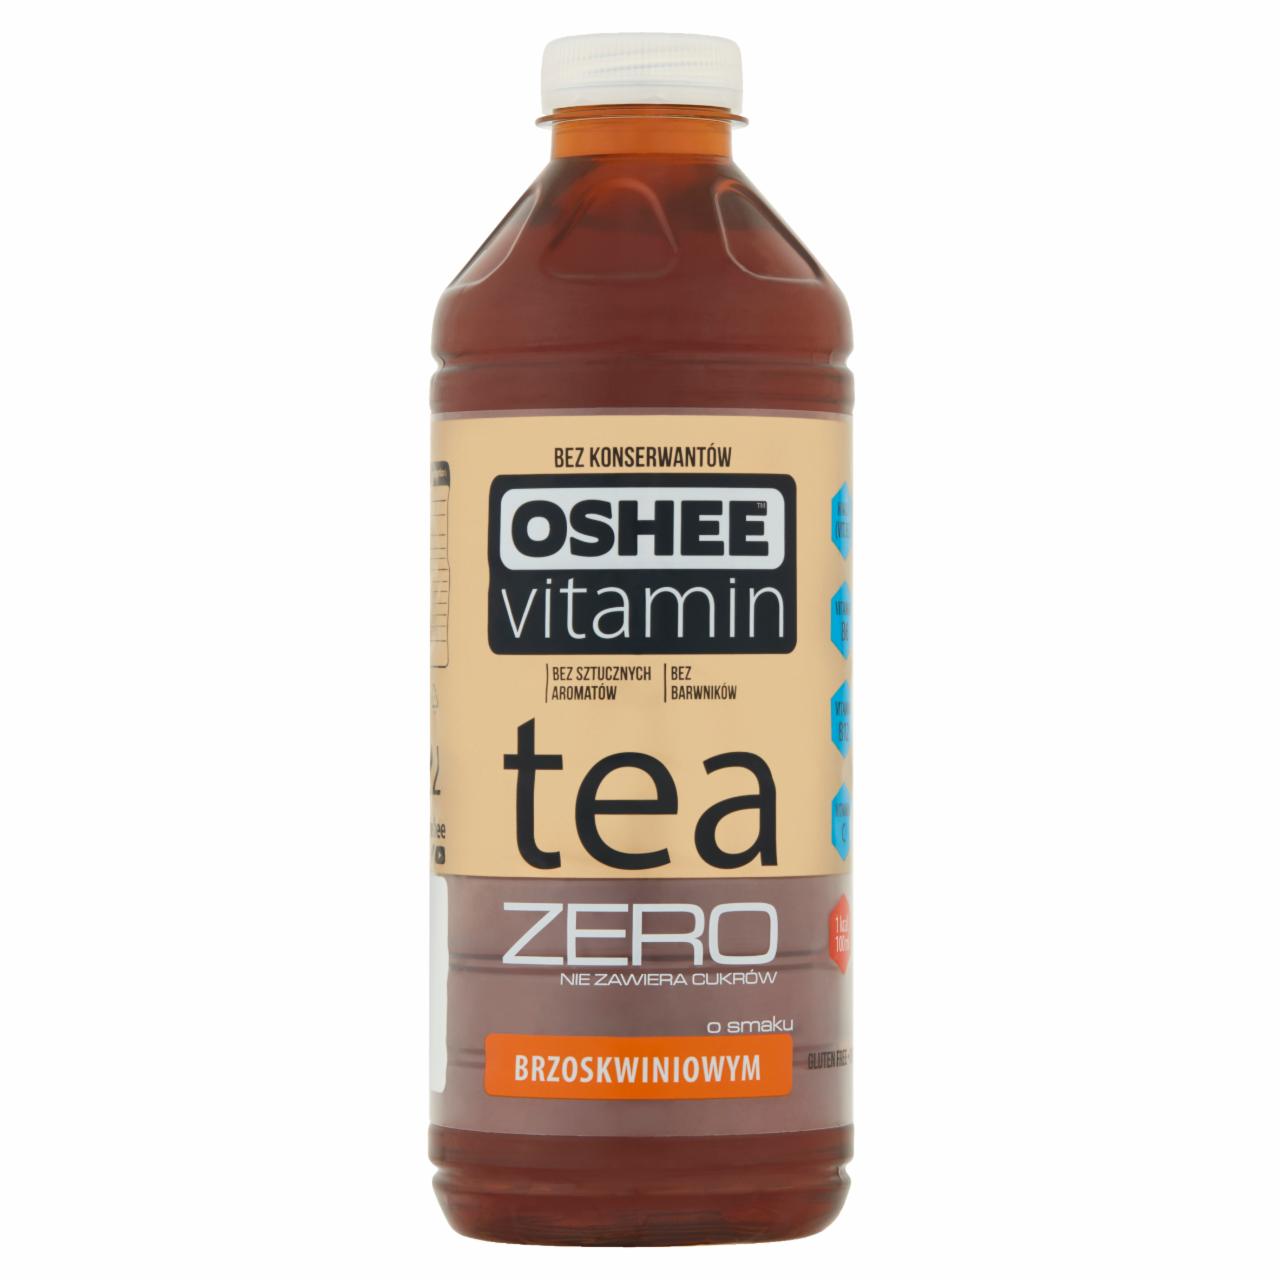 Zdjęcia - Oshee Vitamin Tea Zero Niegazowany napój herbaciany o smaku brzoskwiniowym 1,1 l